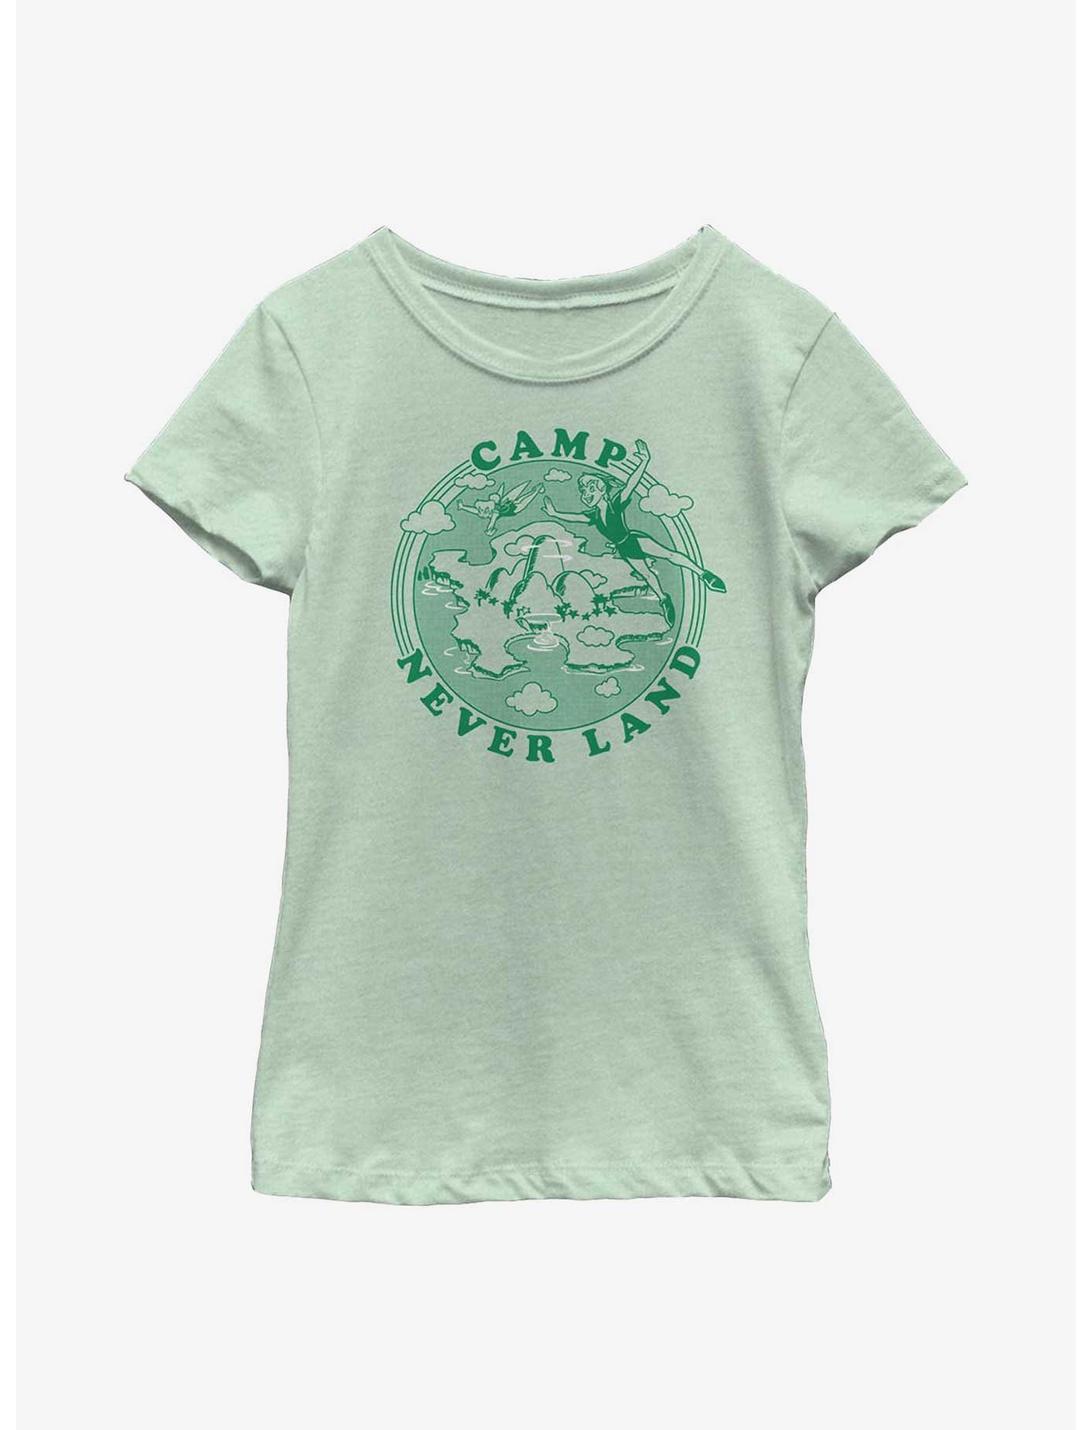 Disney Peter Pan Camp Never Land Youth Girls T-Shirt, MINT, hi-res